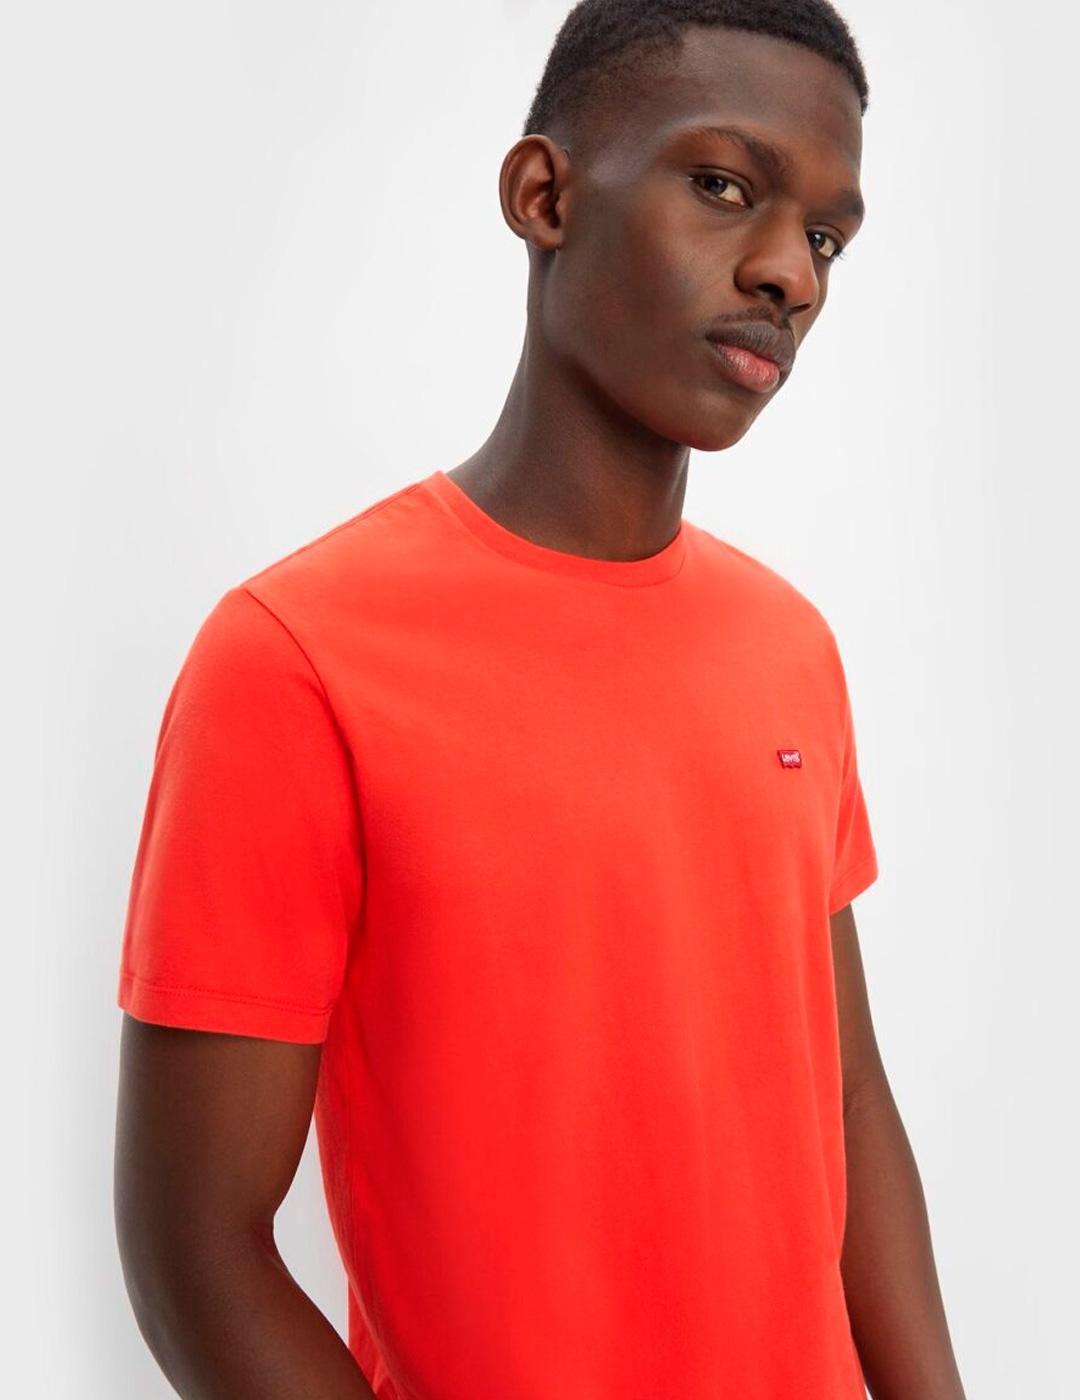 Camiseta Levi´s 'Original Tee' Naranja Oscuro